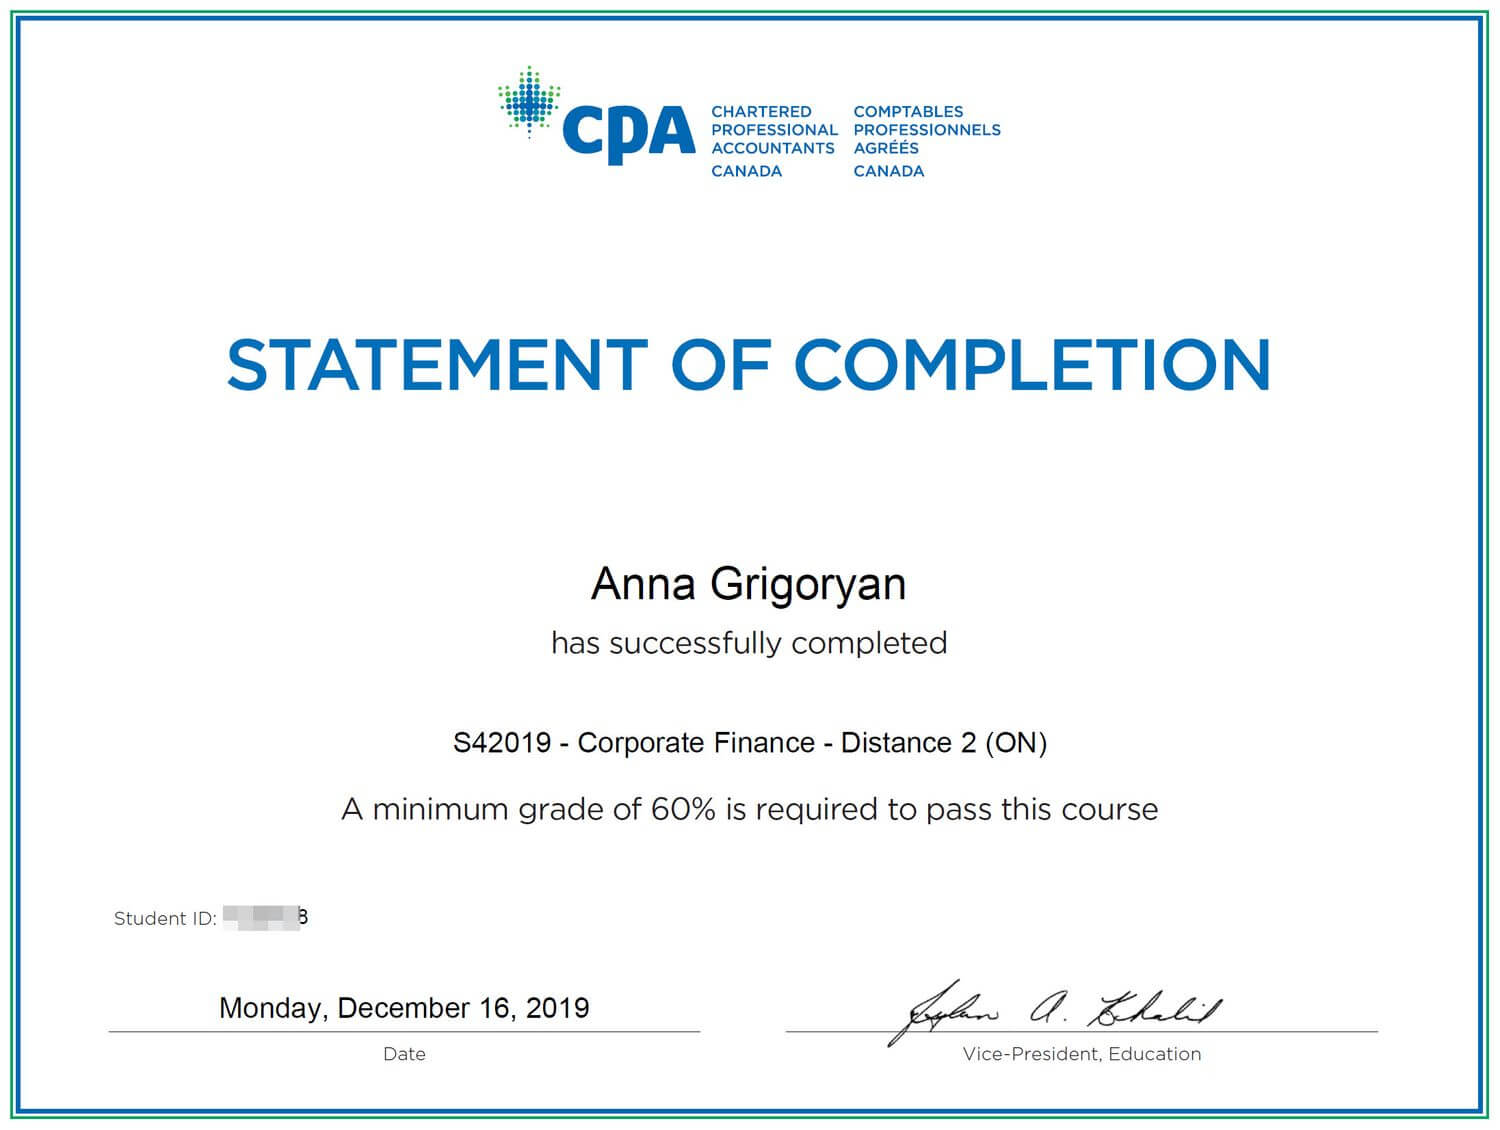 Anna's Corporate Finance CPA certificate